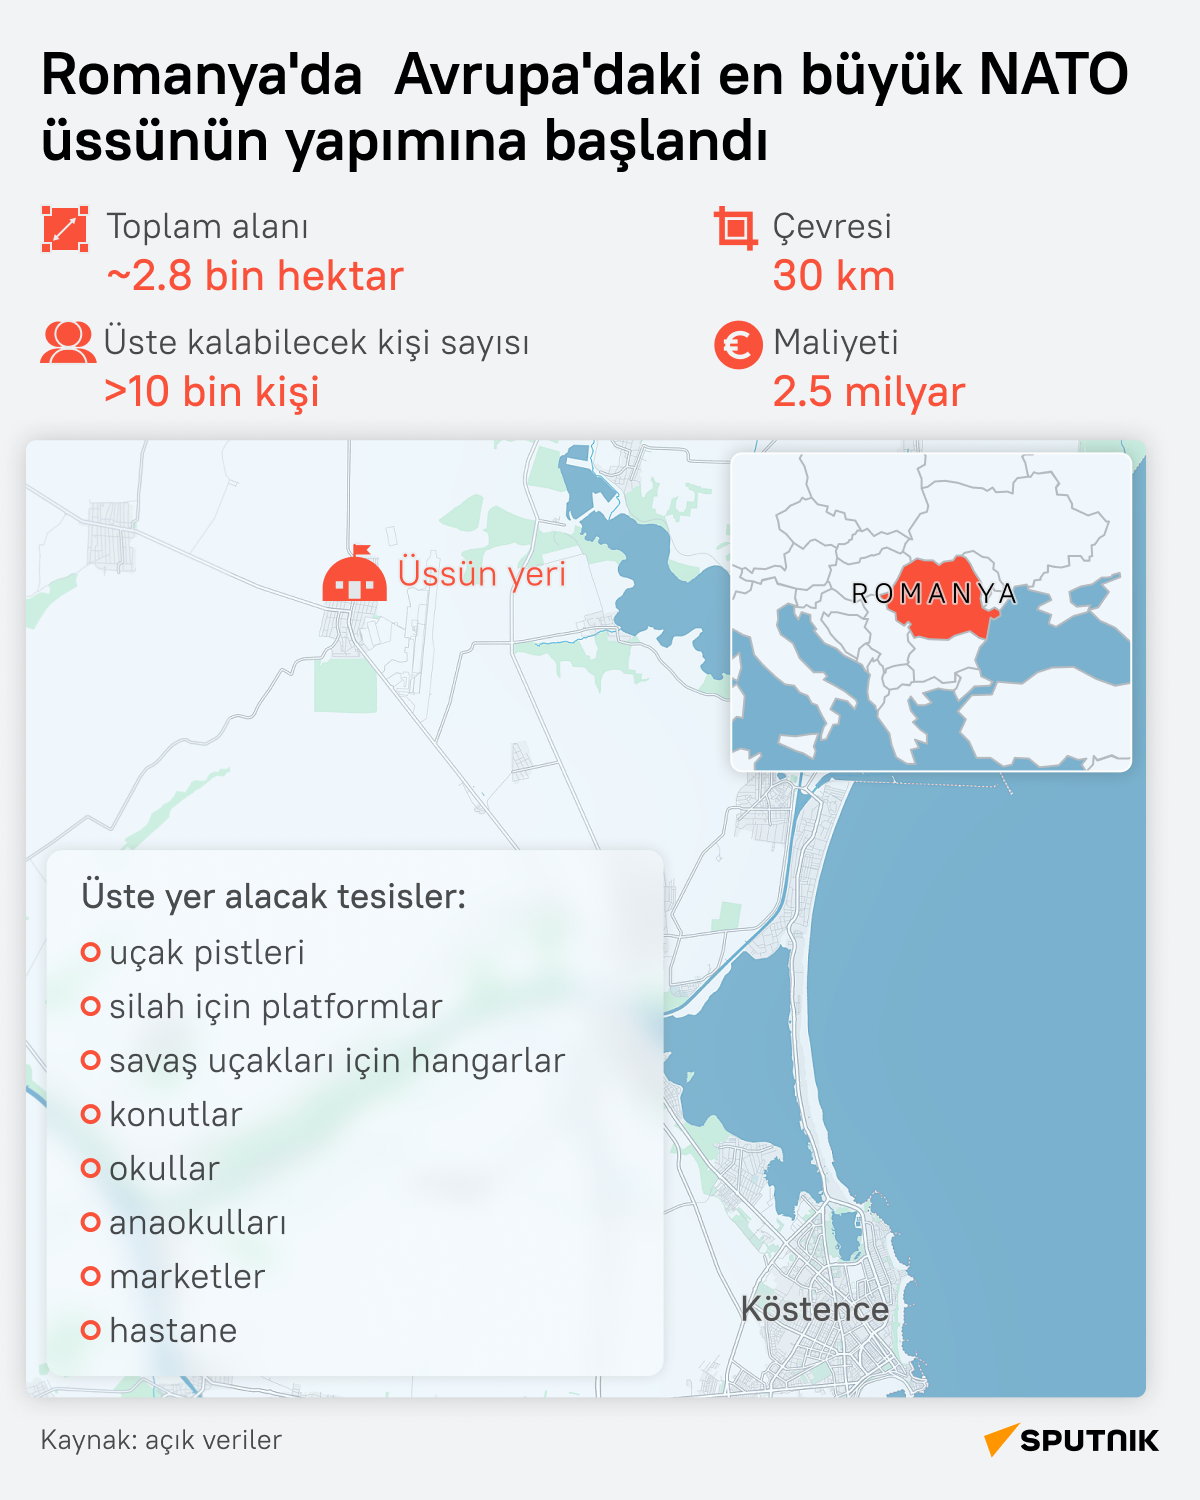 Romanya'da NATO’nun Avrupa’daki en büyük üssü kuruluyor  - Sputnik Türkiye